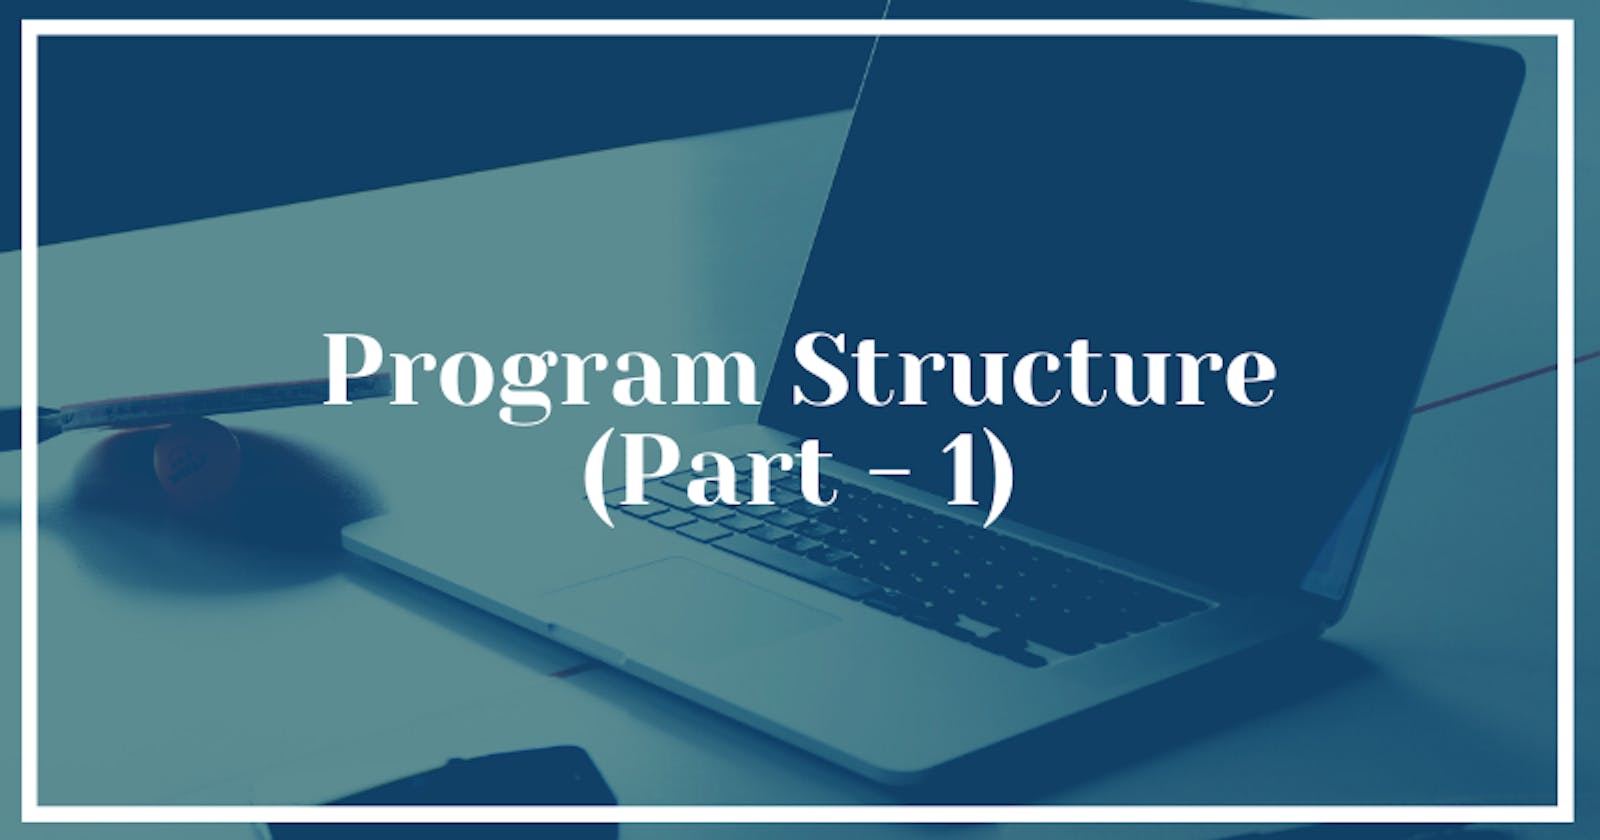 Program Structure (Part - 1)